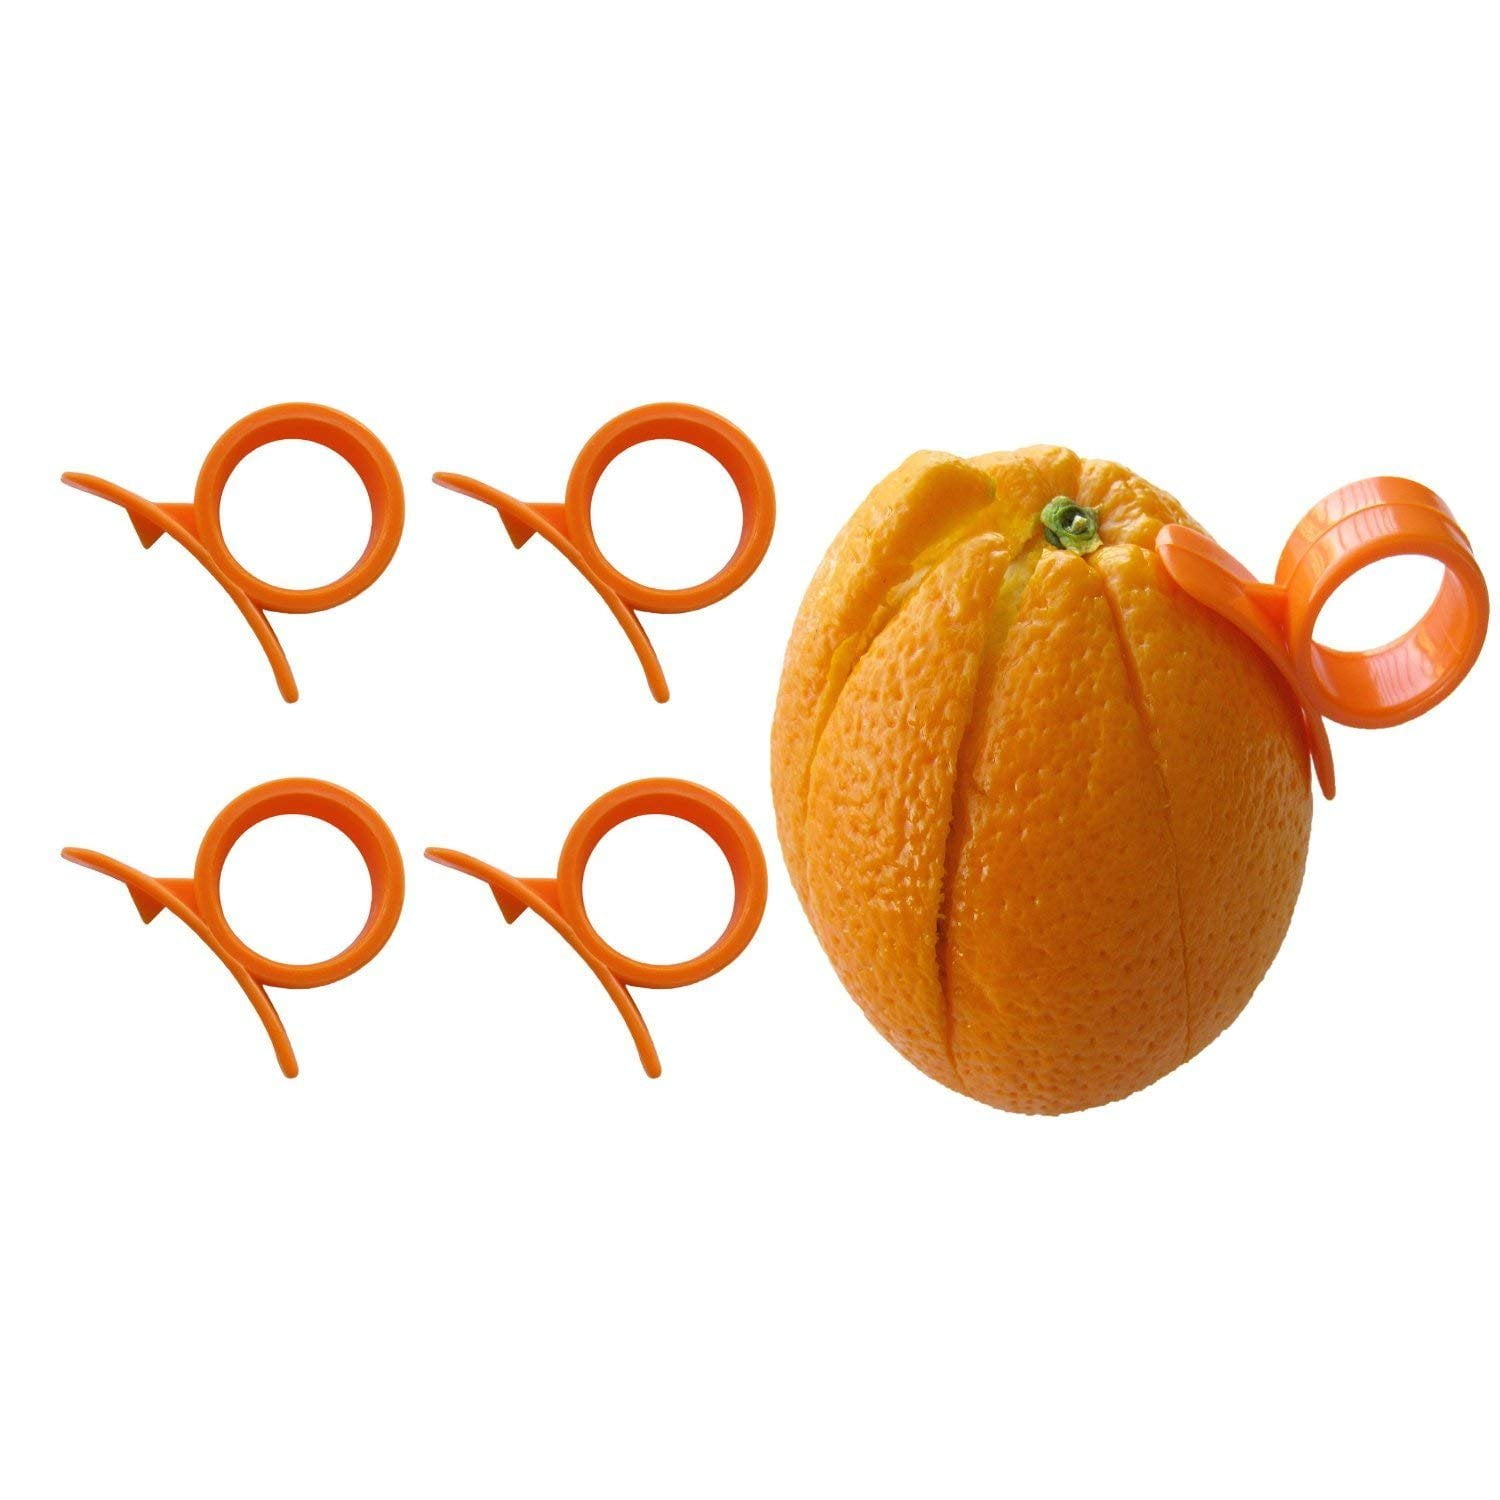 Details about   Compac Industries Citrus Peeler Rapid Peel Oranges Grapefruits Plastic Lemons 